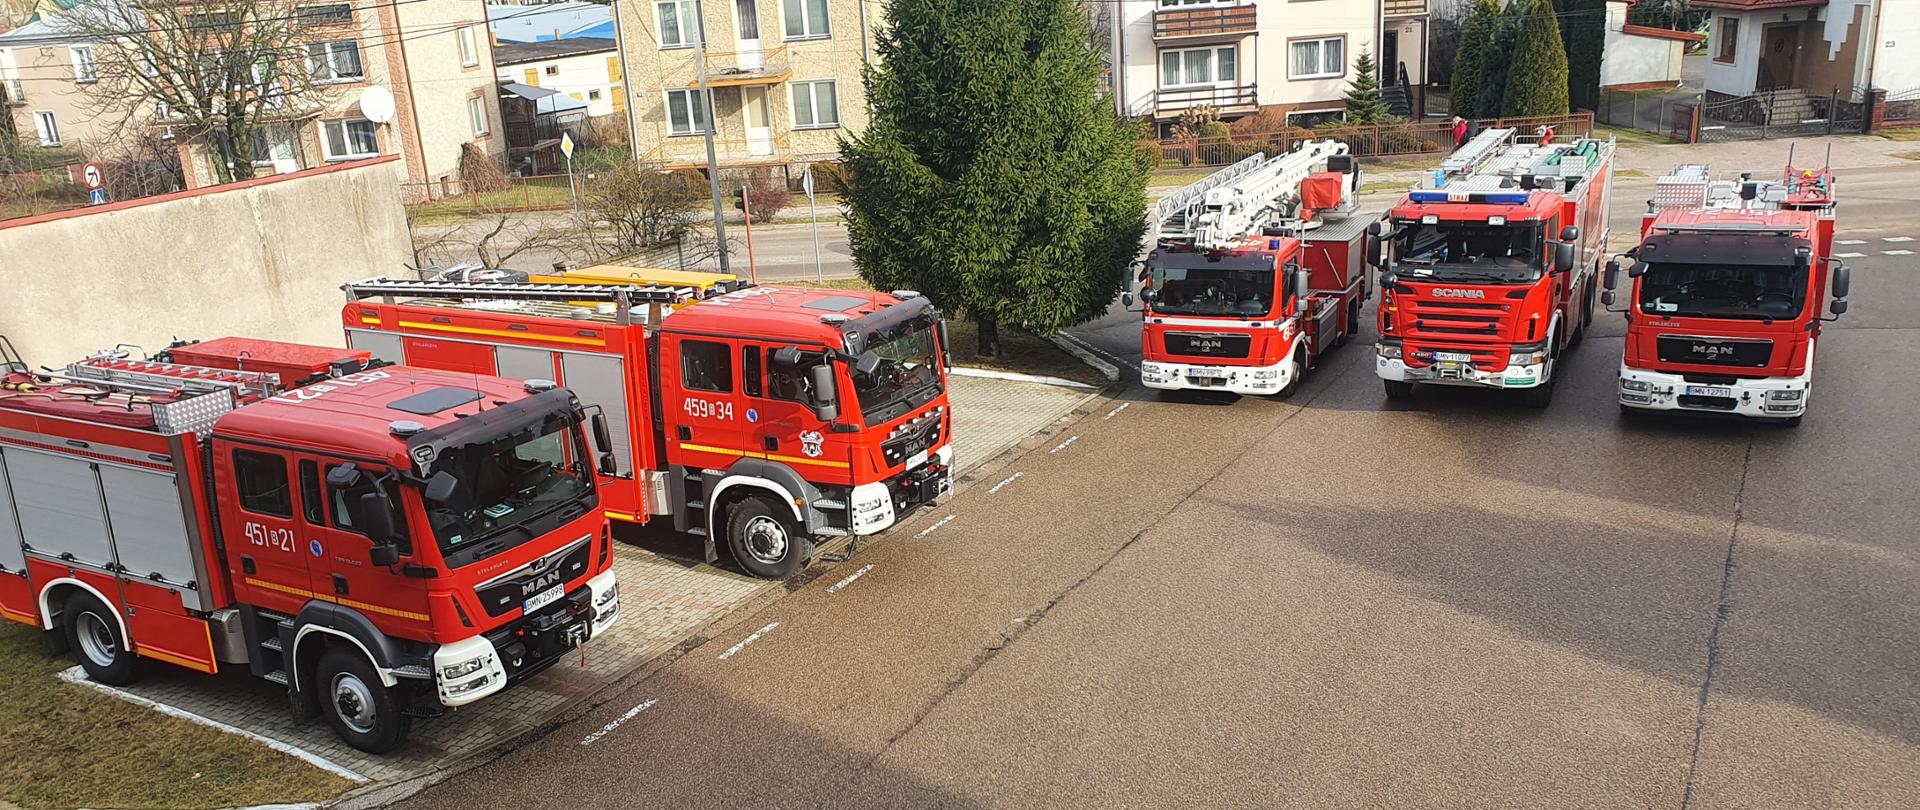 Uroczyste przekazanie samochodów pożarniczych dla Komendy Powiatowej Państwowej Straży Pożarnej w Mońkach oraz Jednostce Ochotniczej Straży Pożarnej w Trzciannem i Długołęce.